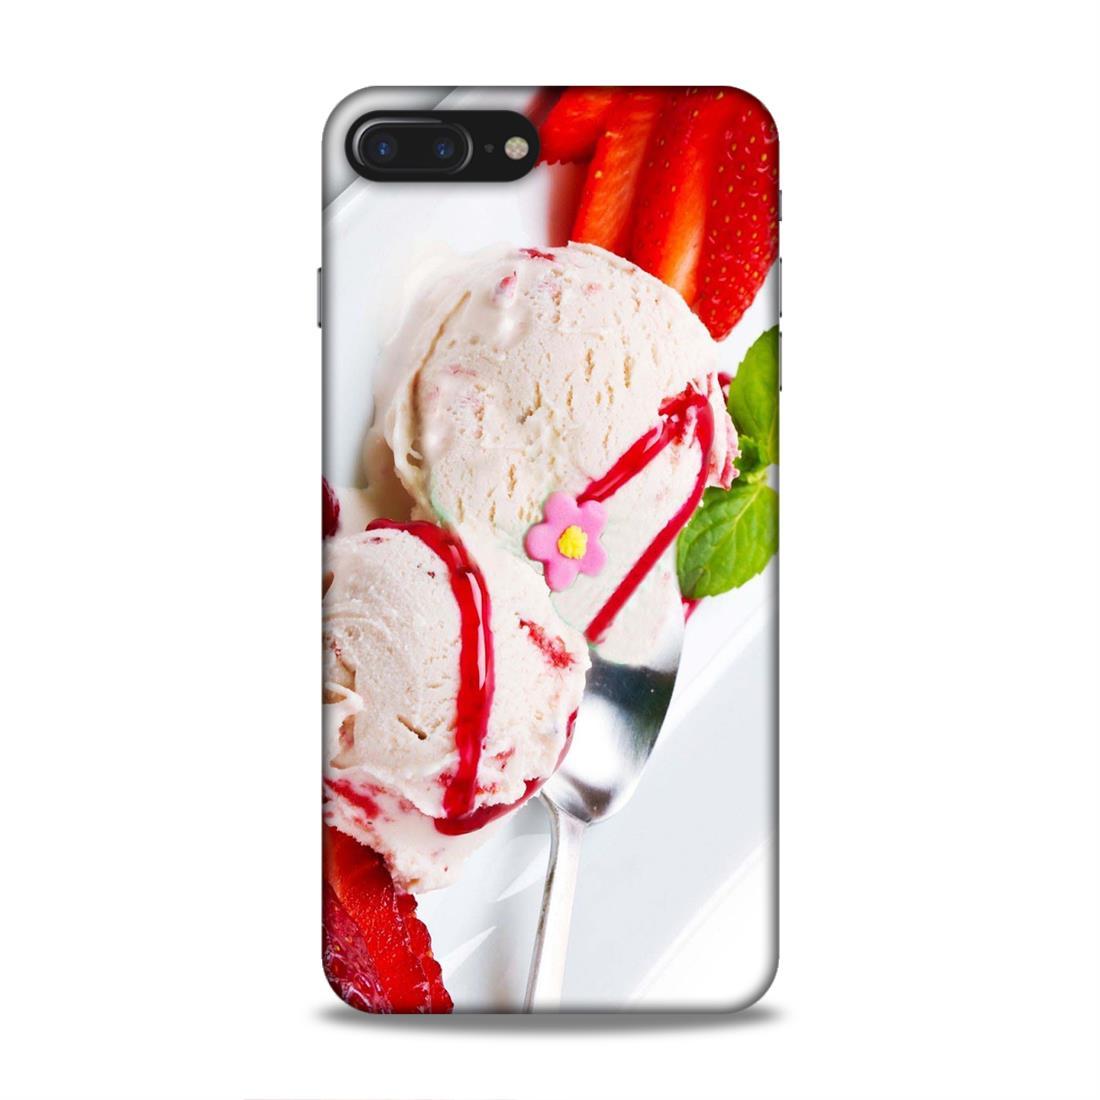 Icecream Love iPhone 7 Plus Mobile Cover